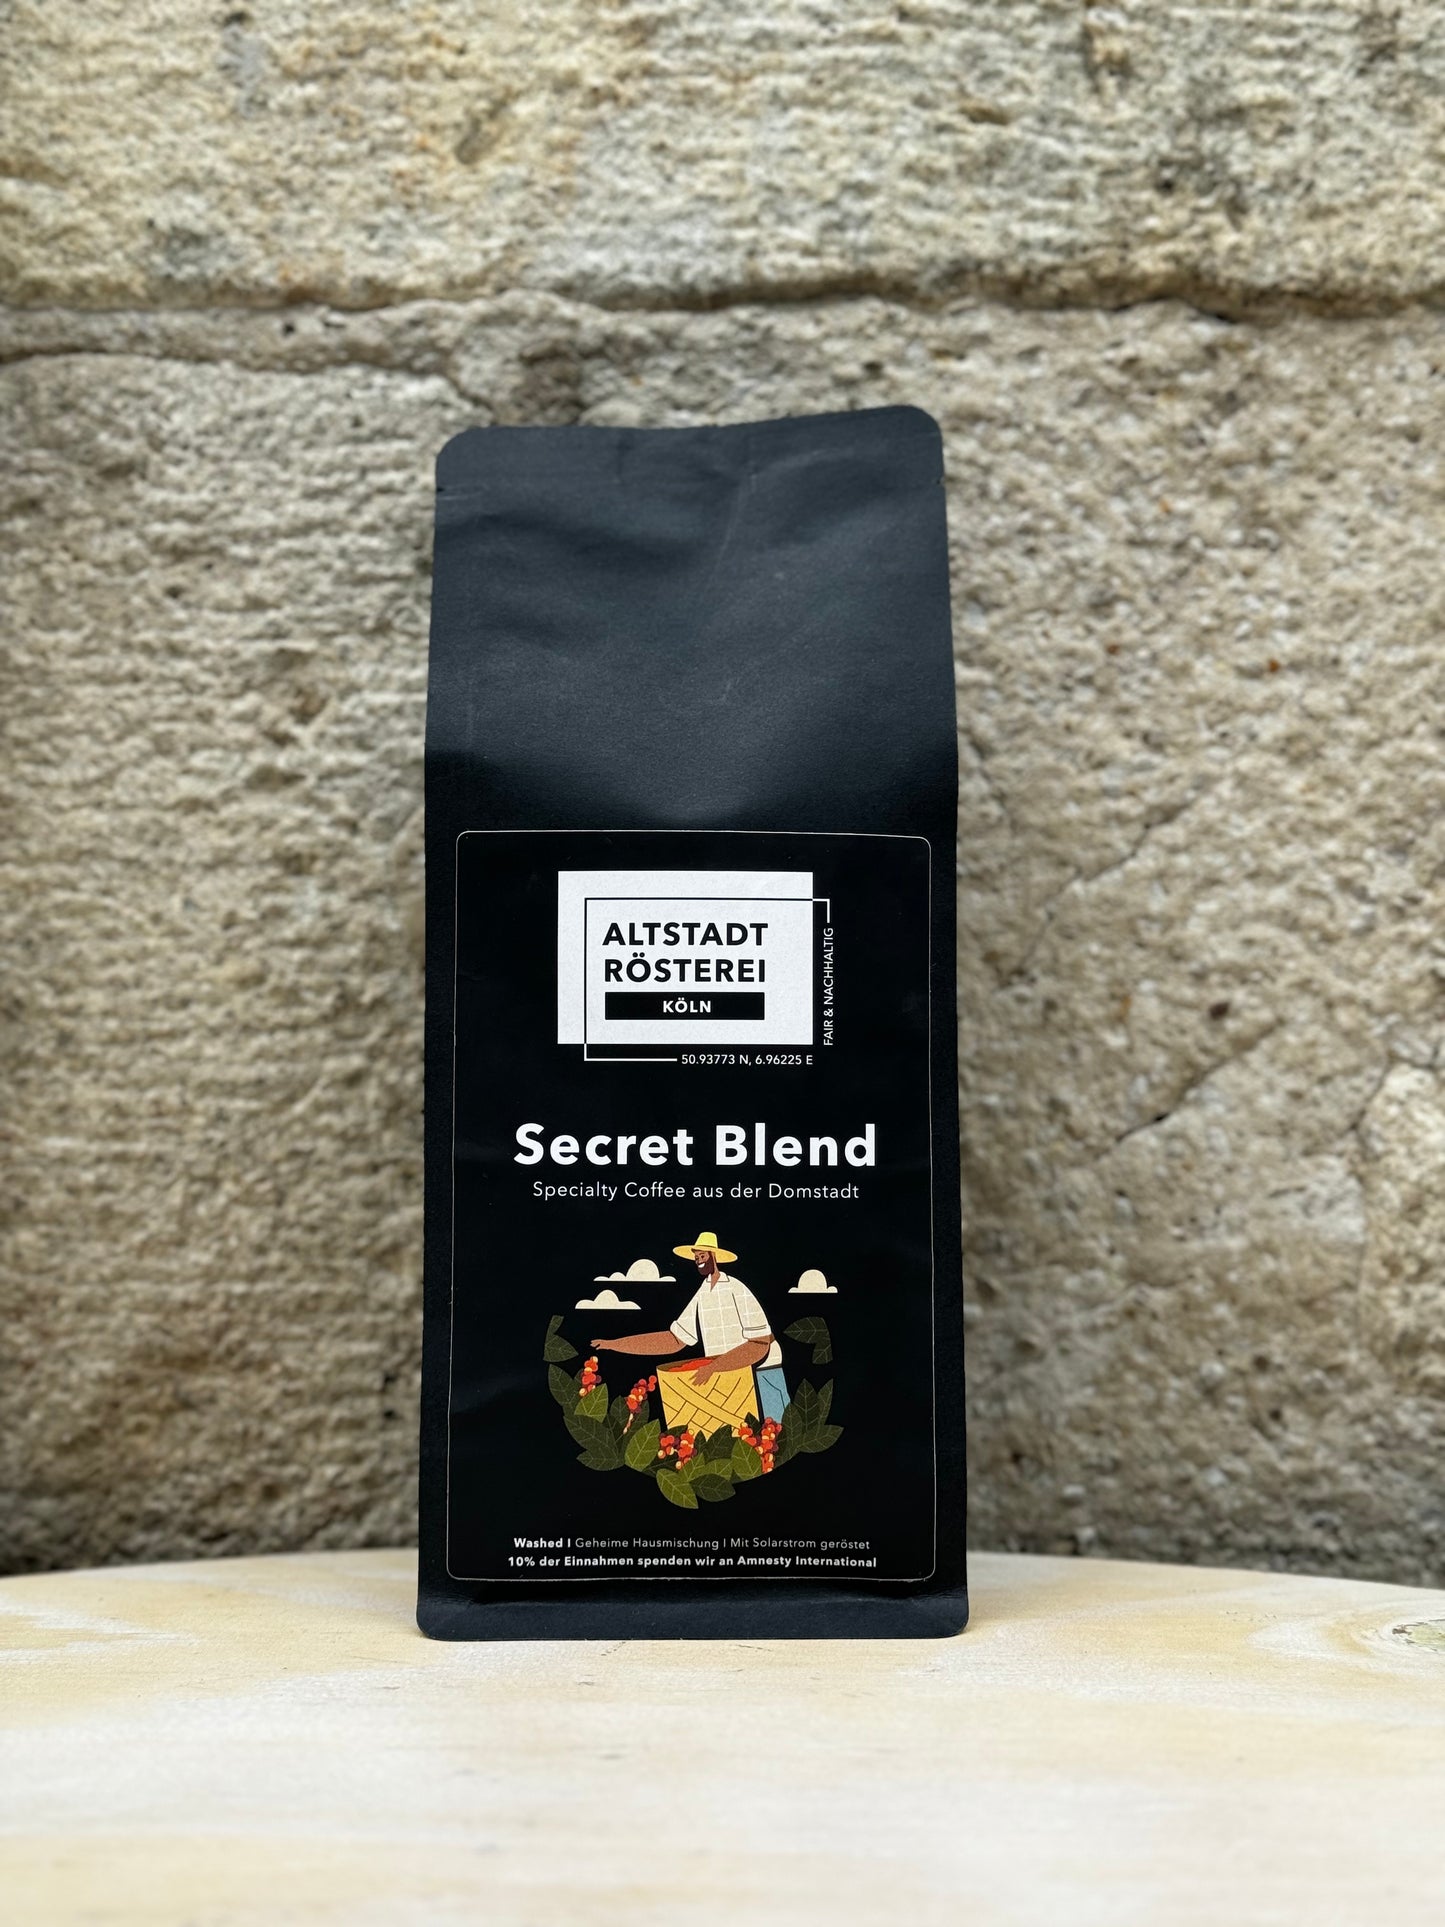 Eine Packung Altstadt Rösterei Köln Secret Blend Kaffee vor einer Steinwand. Auf der Verpackung ist eine Illustration eines Kaffeebauern, der Kaffeekirschen pflückt, sowie die Beschreibung "Specialty Coffee aus der Domstadt" zu sehen.